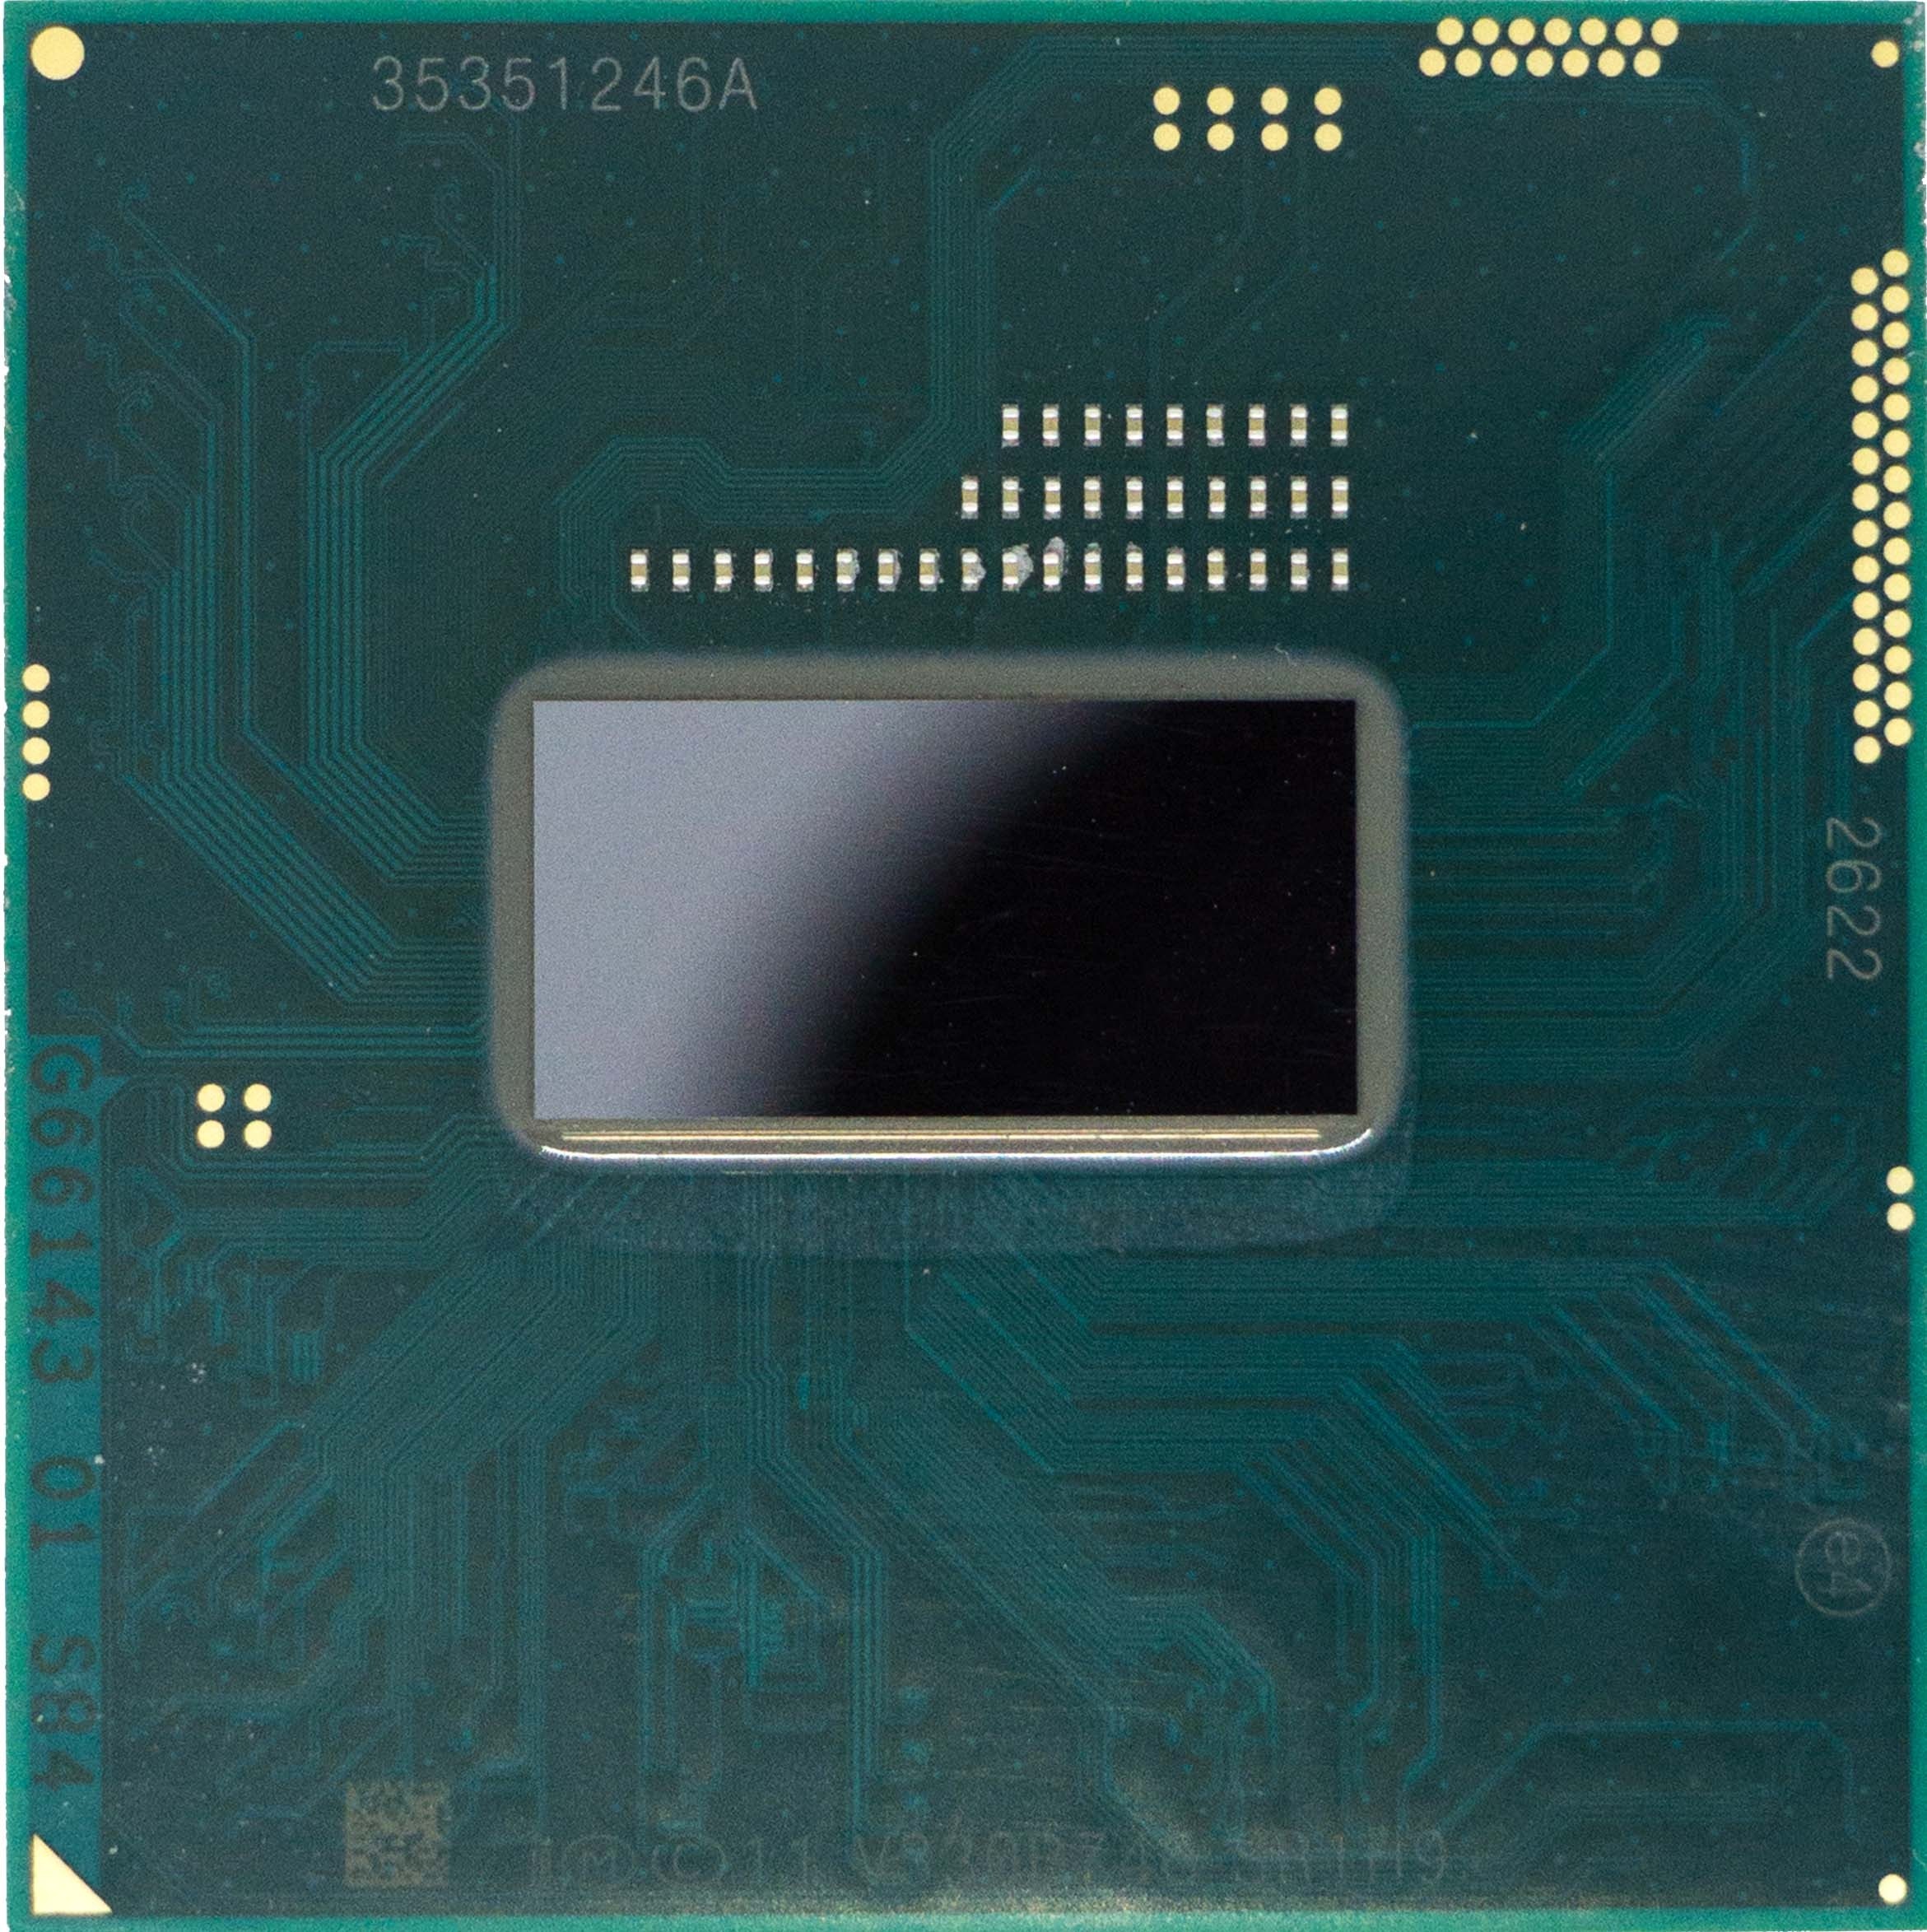 Intel Core i5-4300M (SR1H9) 2.60Ghz Dual (2) Core CPU